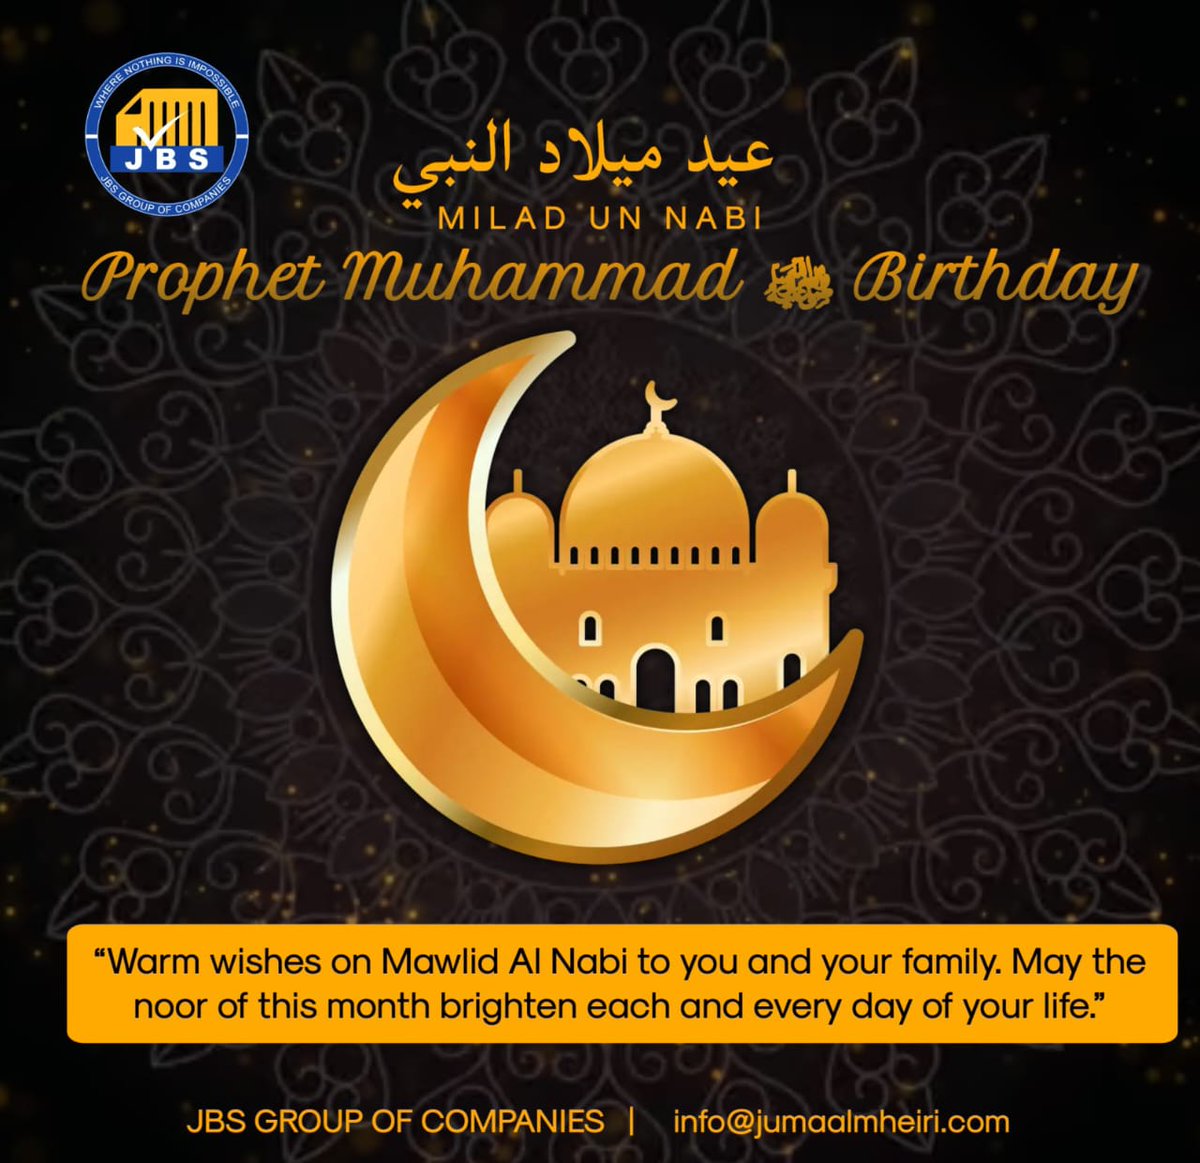 MILAD UN NABI❤️ #ProphetMuhammad #mashaallah #birthday #jbsgroupofcompanies